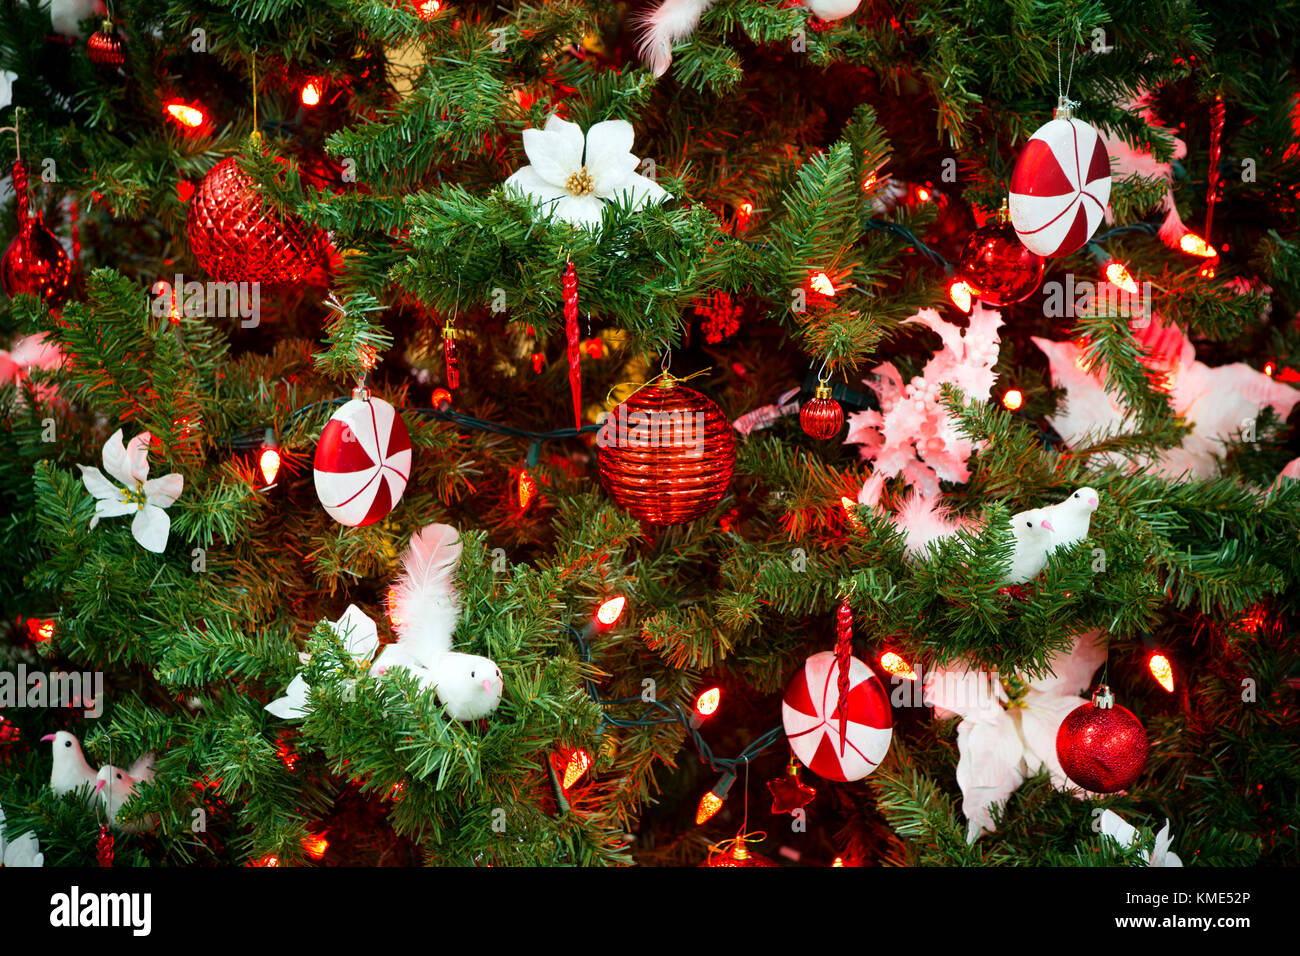 Dettaglio delle decorazioni ornamentali albero di Natale per la vacanza festosa celebrazione del Natale. Foto Stock